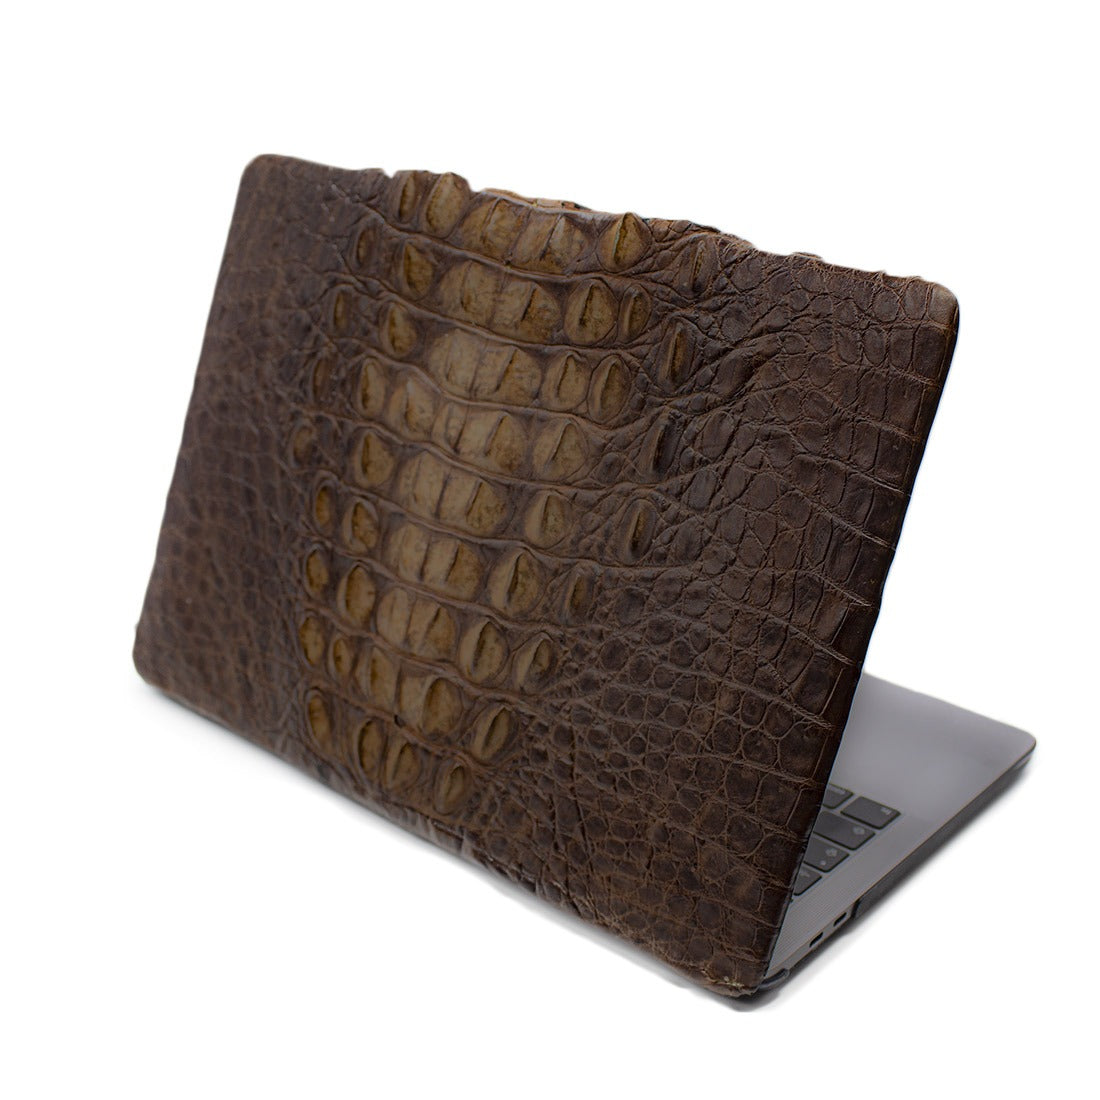 Funda tipo Case para Laptop de Espalda de Cocodrilo del Nilo- CLP03 Envío Gratis - Zankora Exotic Life Style